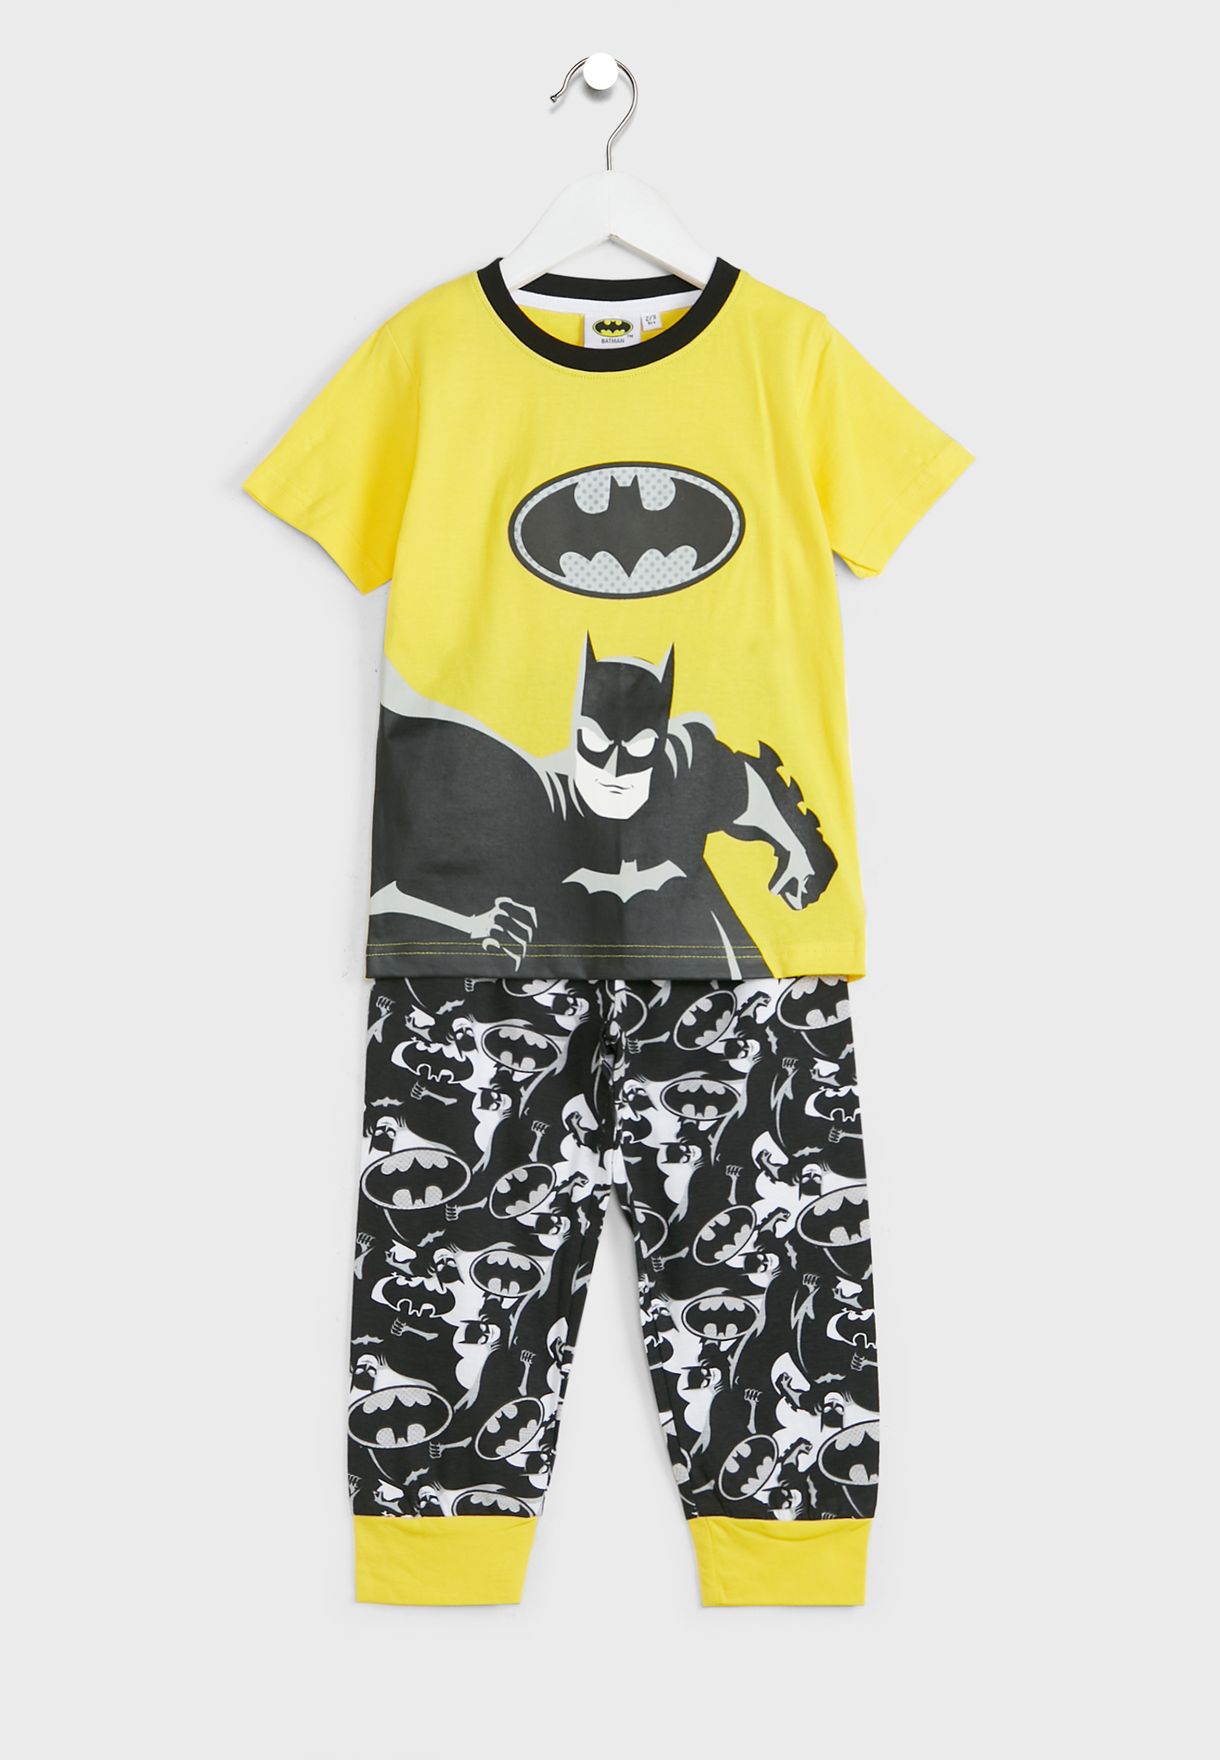 Kids Batman Pyjama Set